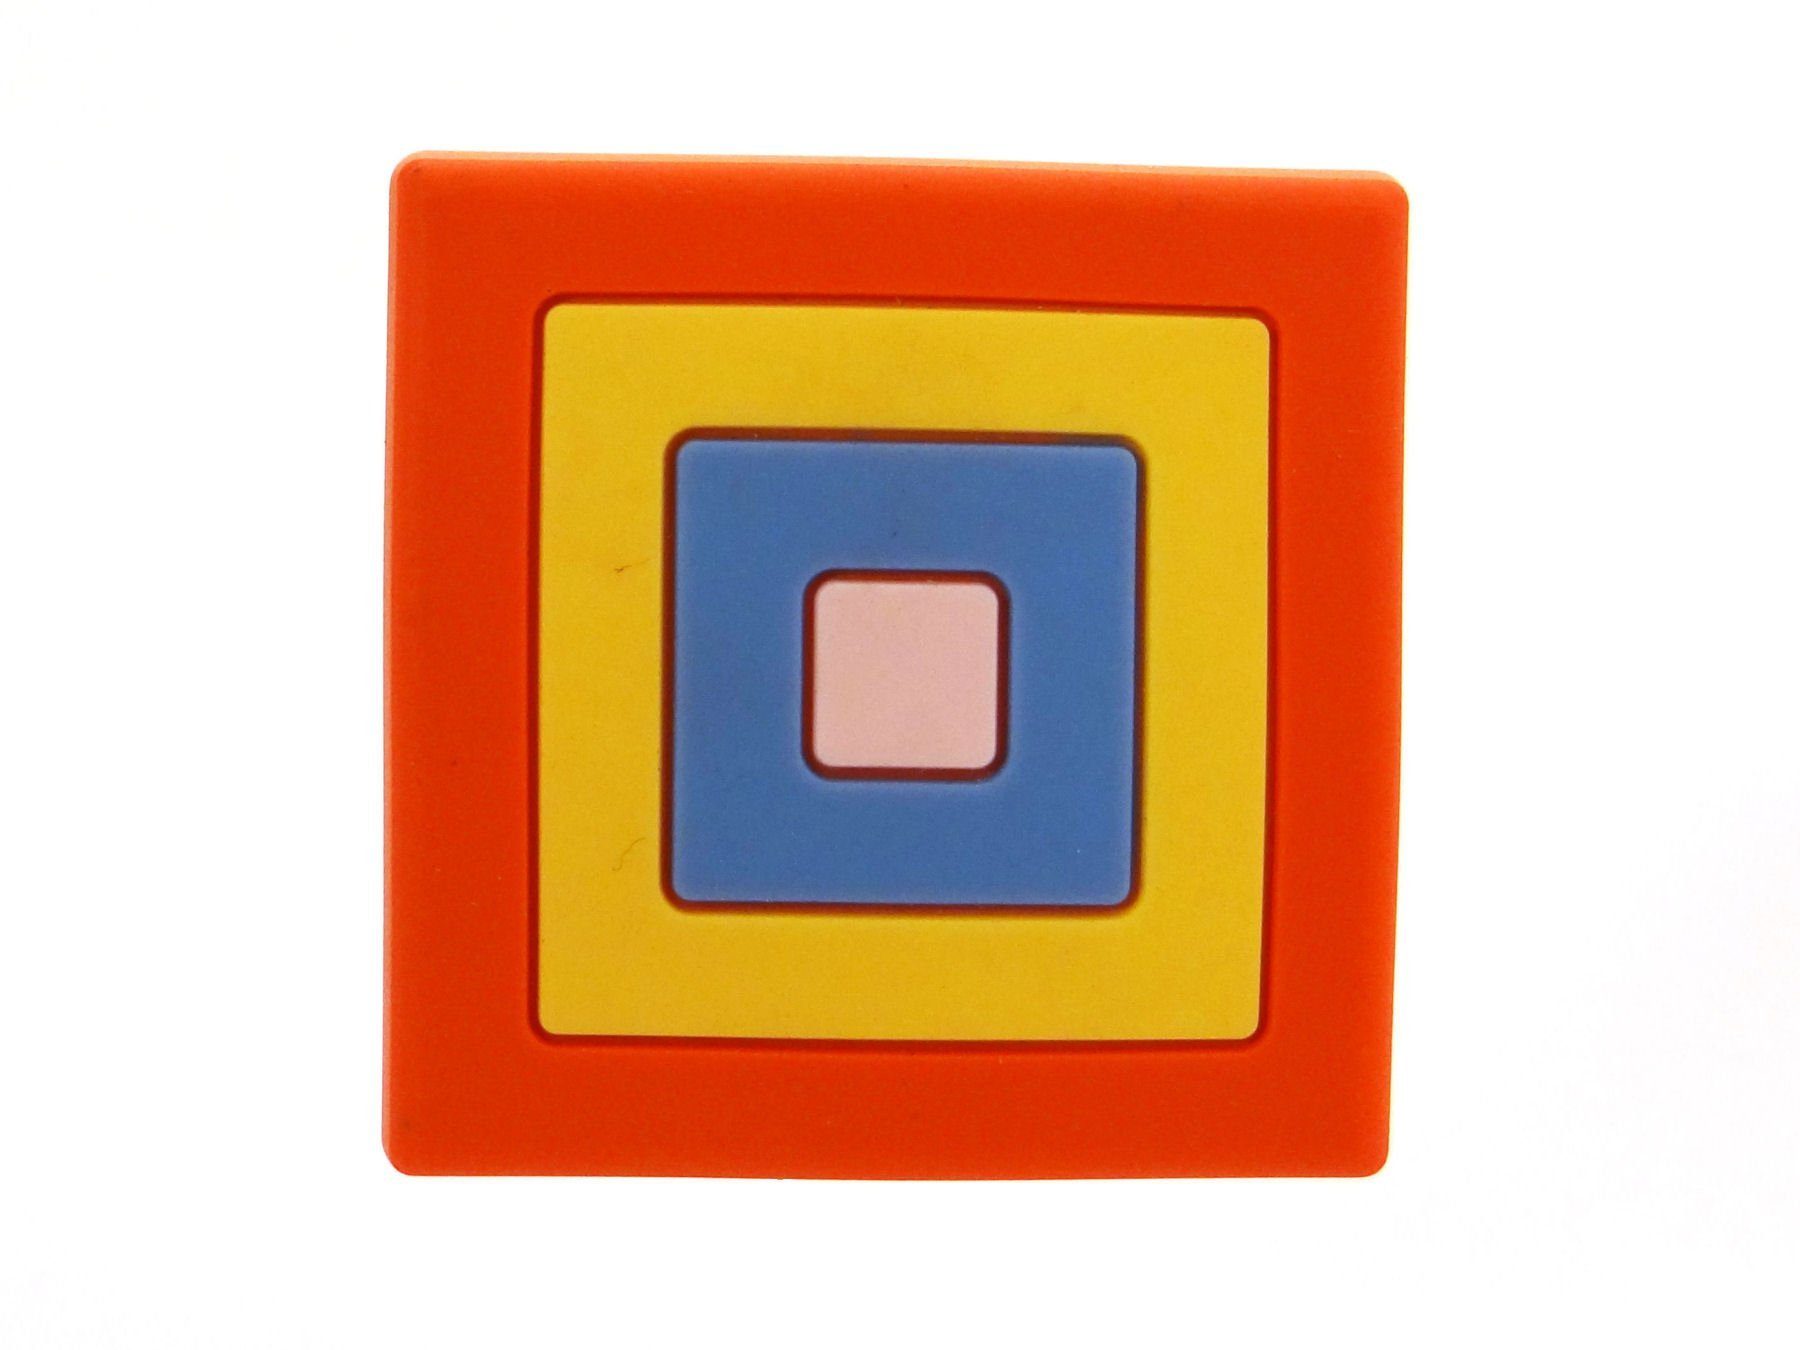 SO-TECH® Möbelknopf Kindermöbelknopf Quadrat Schraube Kinderzimmer Knopf incl. Knauf aus für bunt Gummi